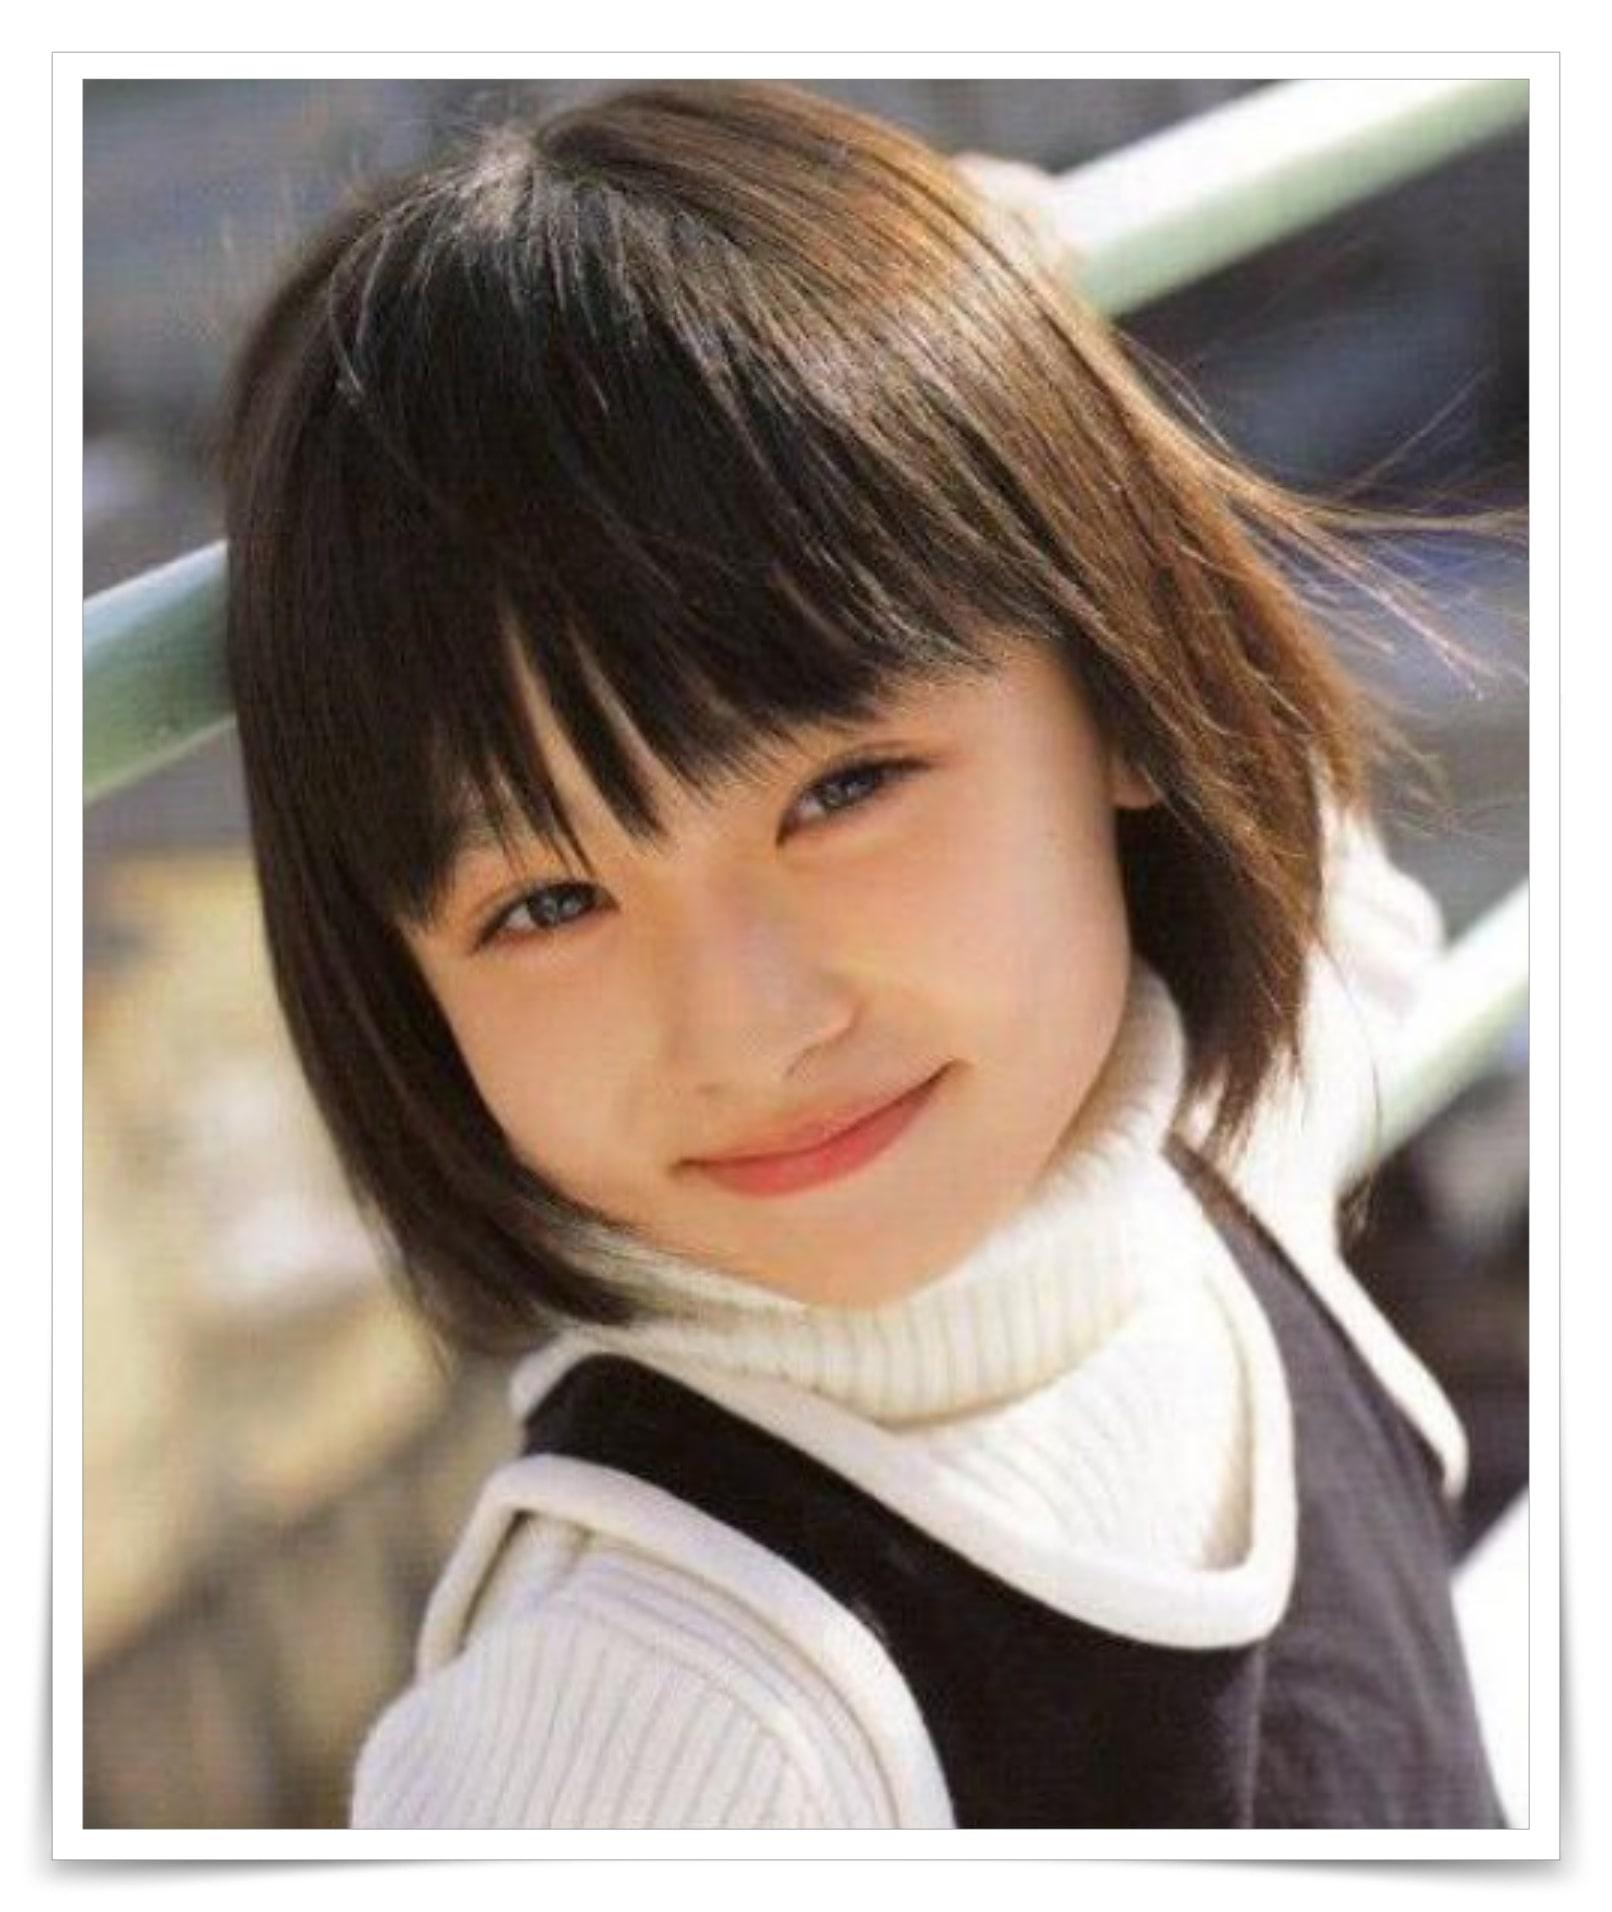 天才美少女子役時代の愛らしい笑顔がかわいい吉川愛 吉田里琴 あげてけ